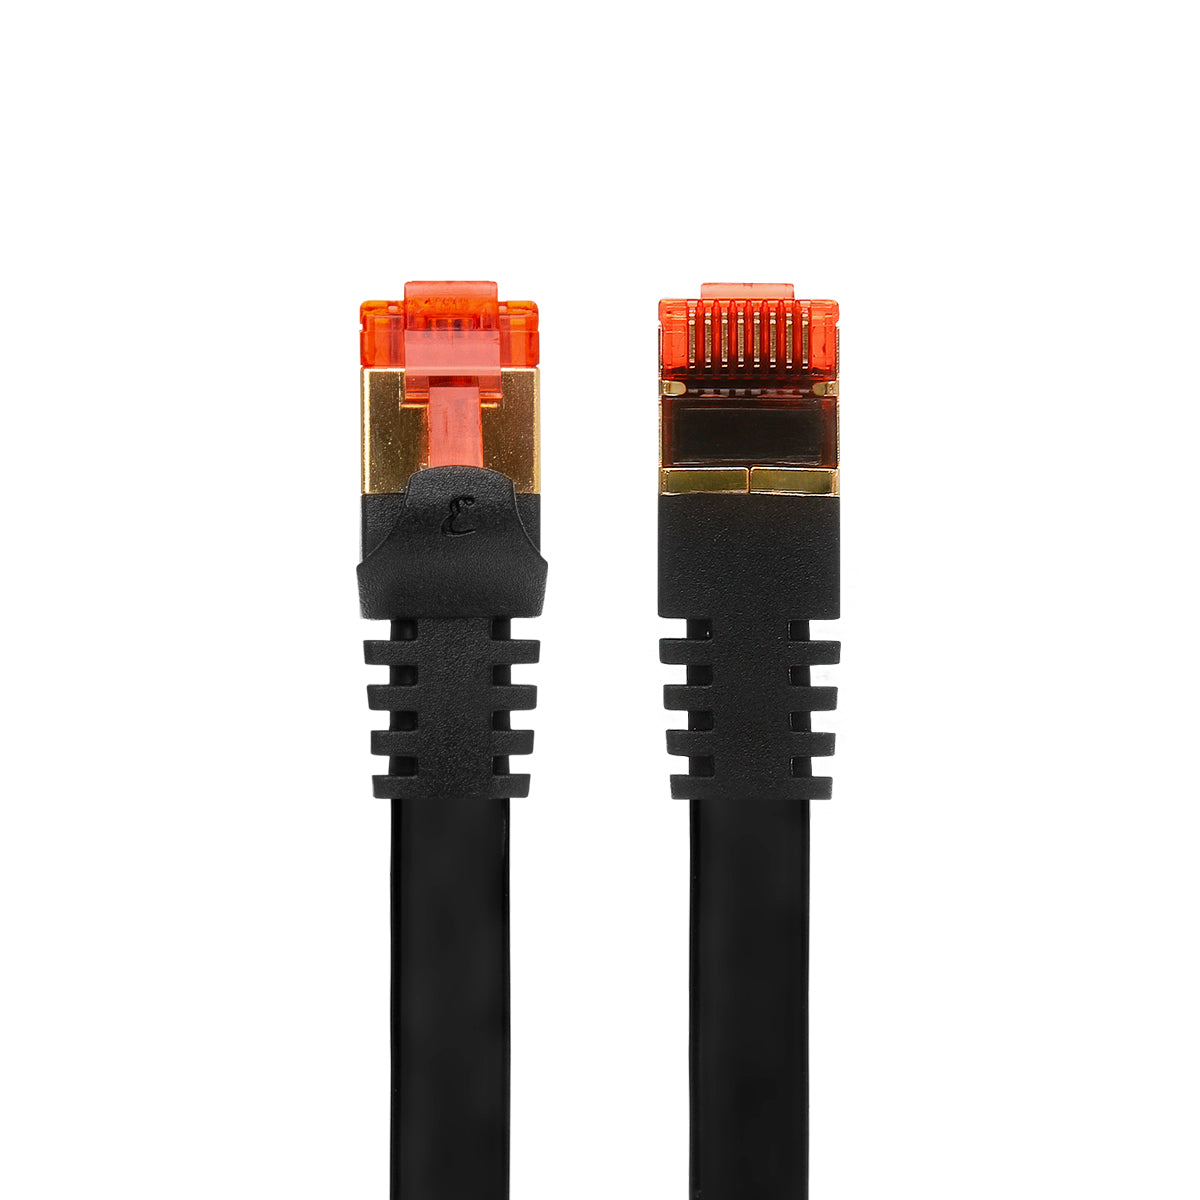 CAT7 Flat Shielded Gigabit Ethernet RJ45 LAN SFTP Patch Cable LSZH - Black